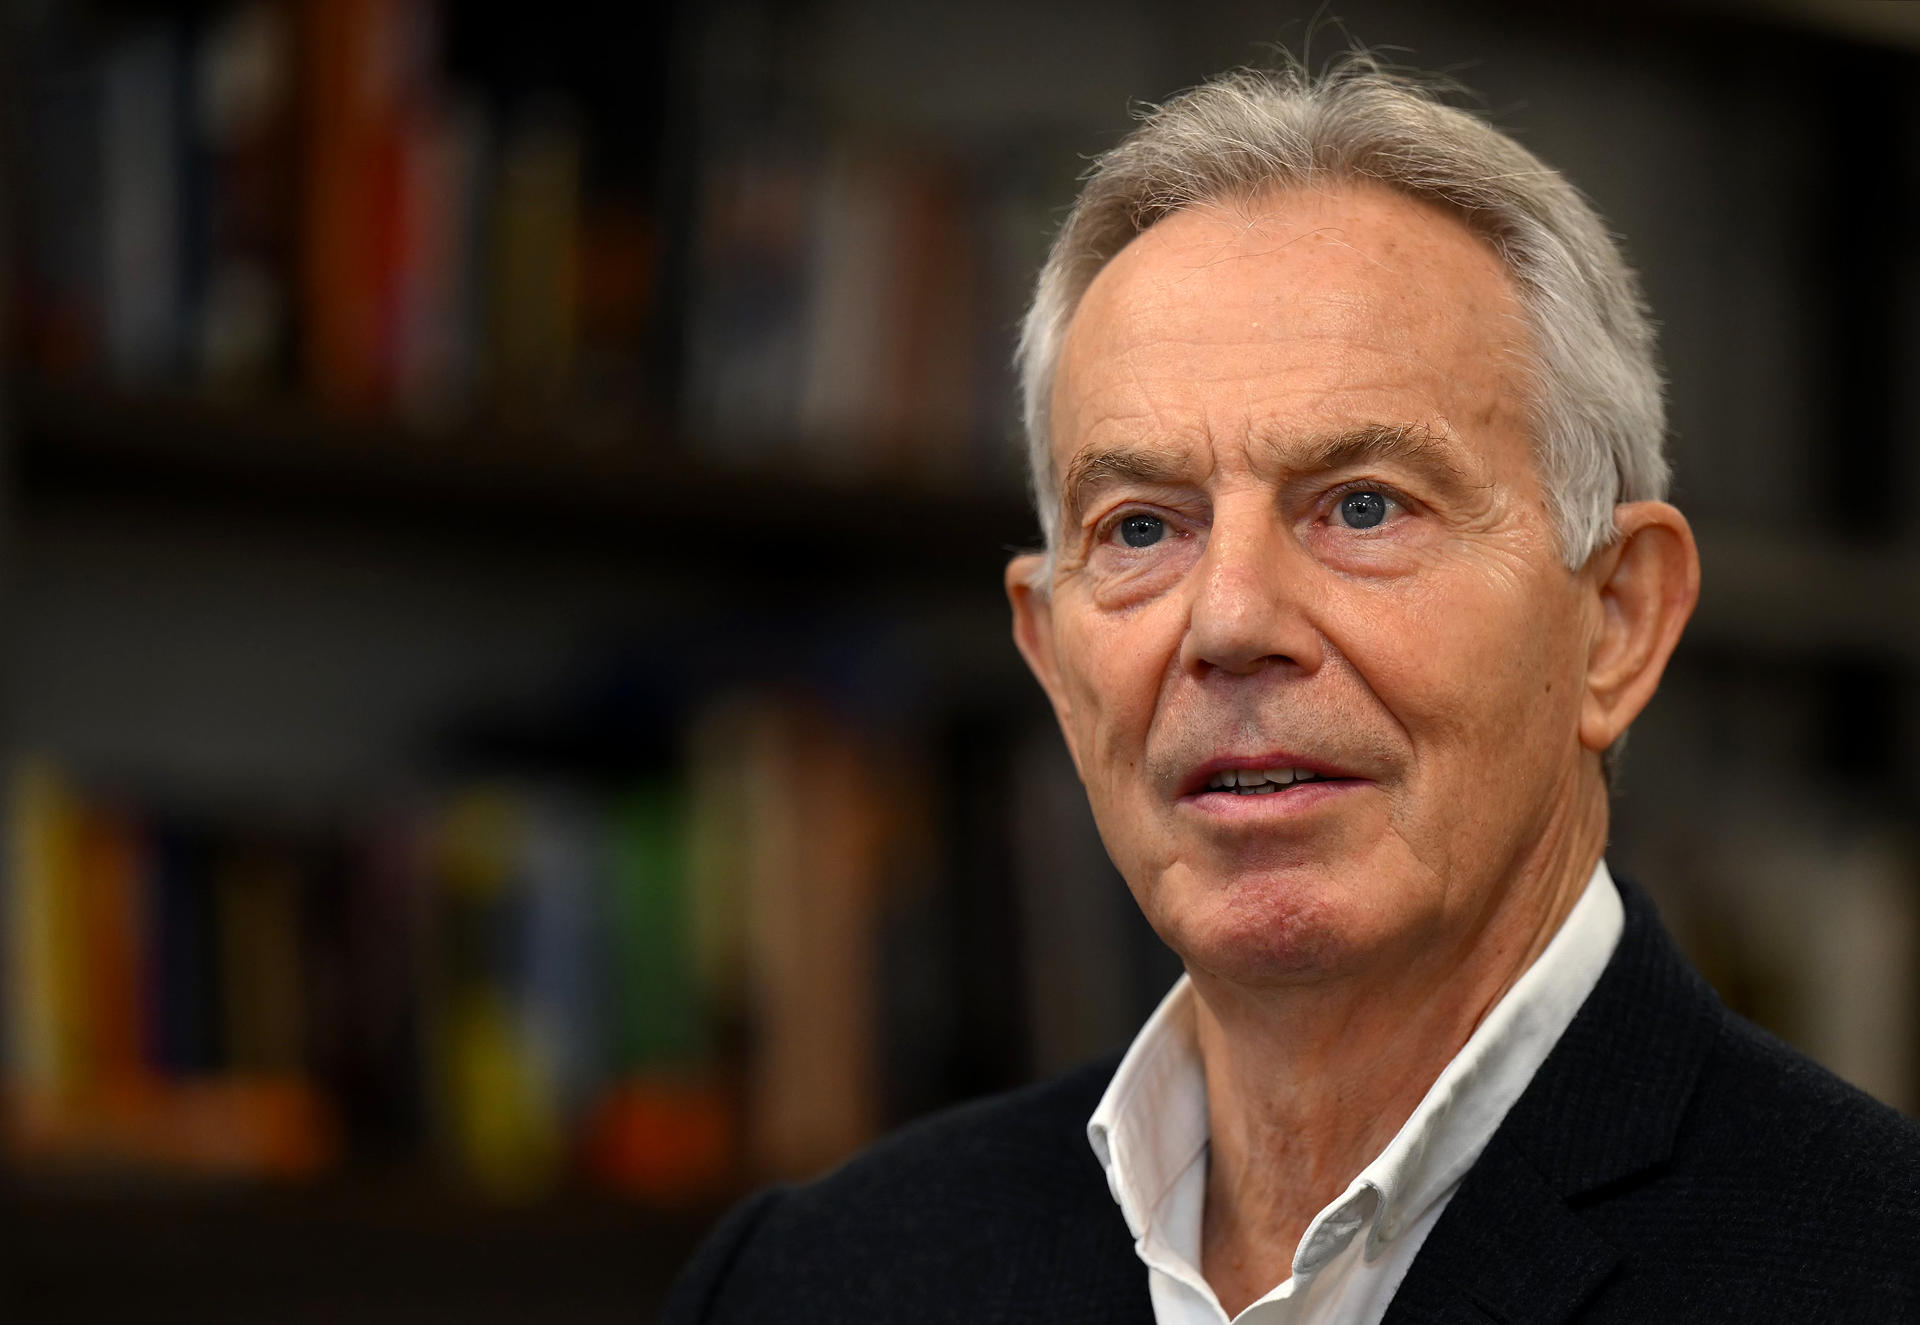 El ex primer ministro británico Tony Blair: El Brexit ha puesto “todo en peligro” en Irlanda del Norte